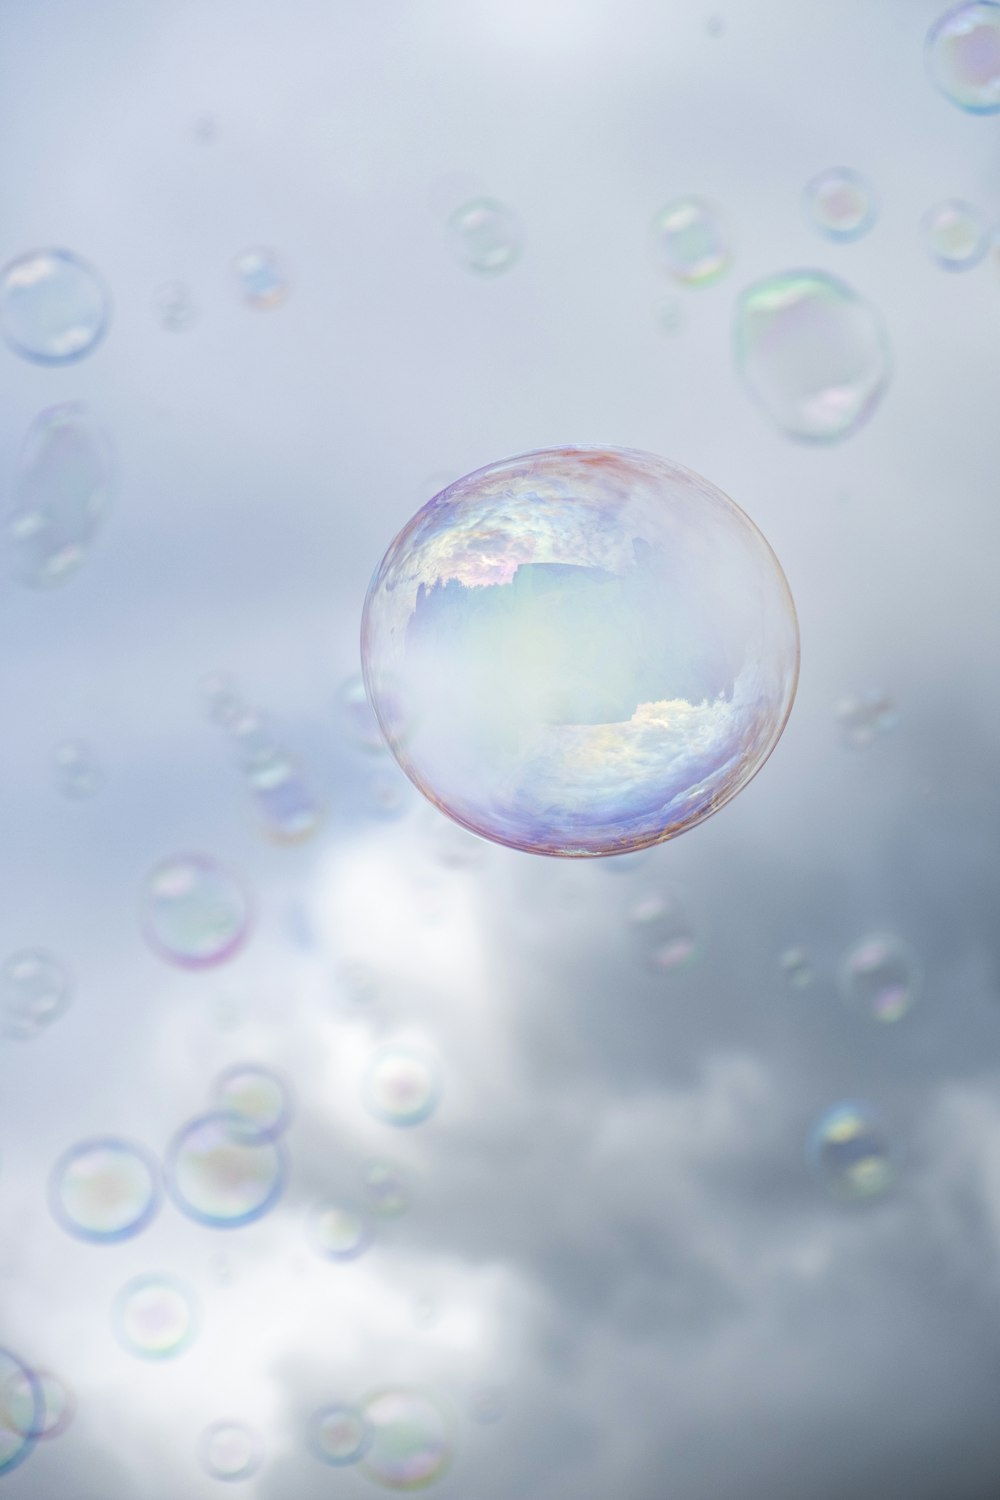 bolle chiare nell'aria